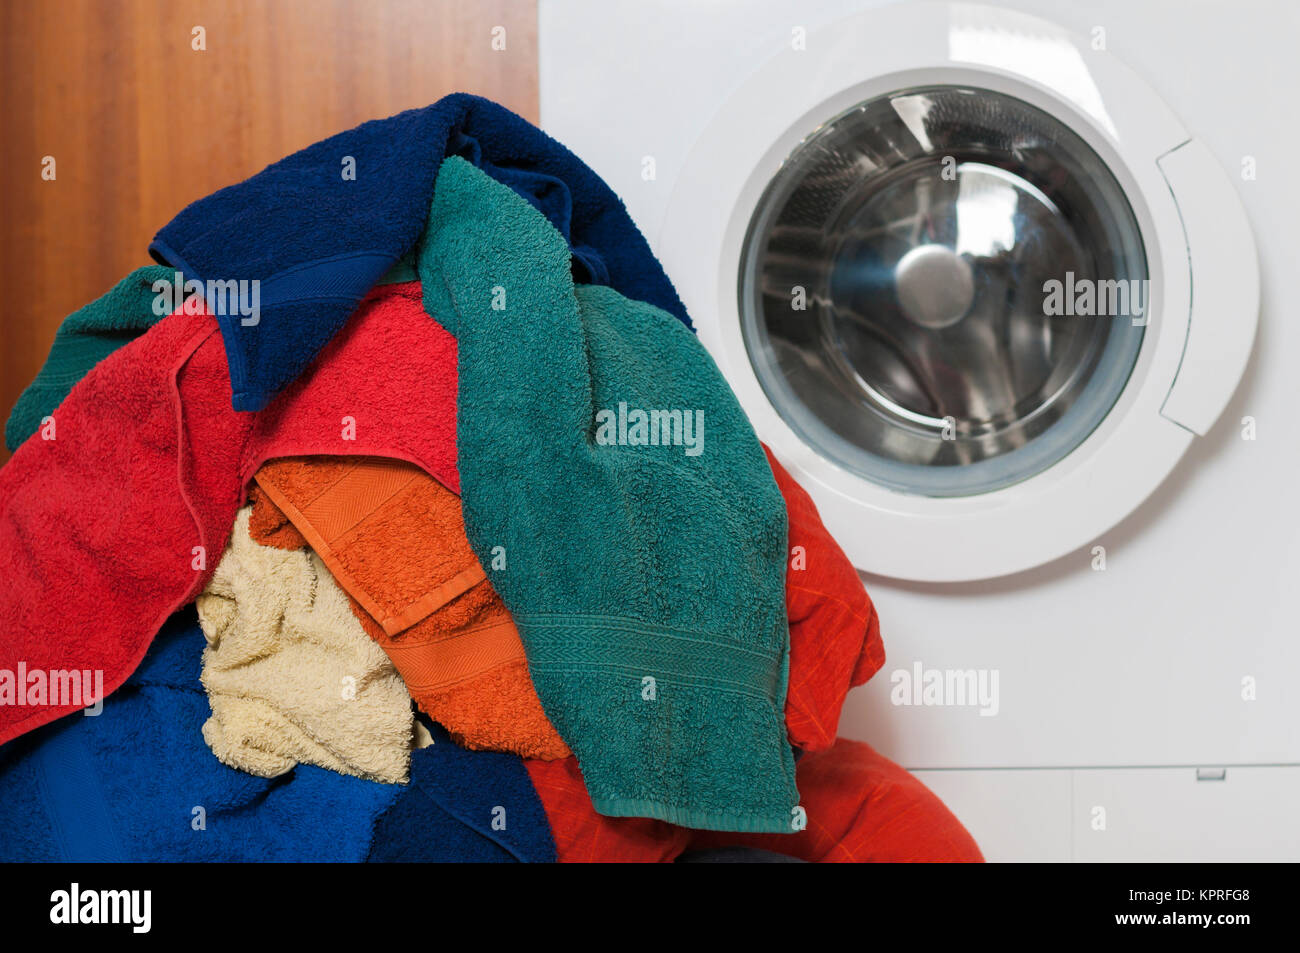 Hausarbeit, Waschservice, Waschmaschine mit bunter Waesche. Stock Photo